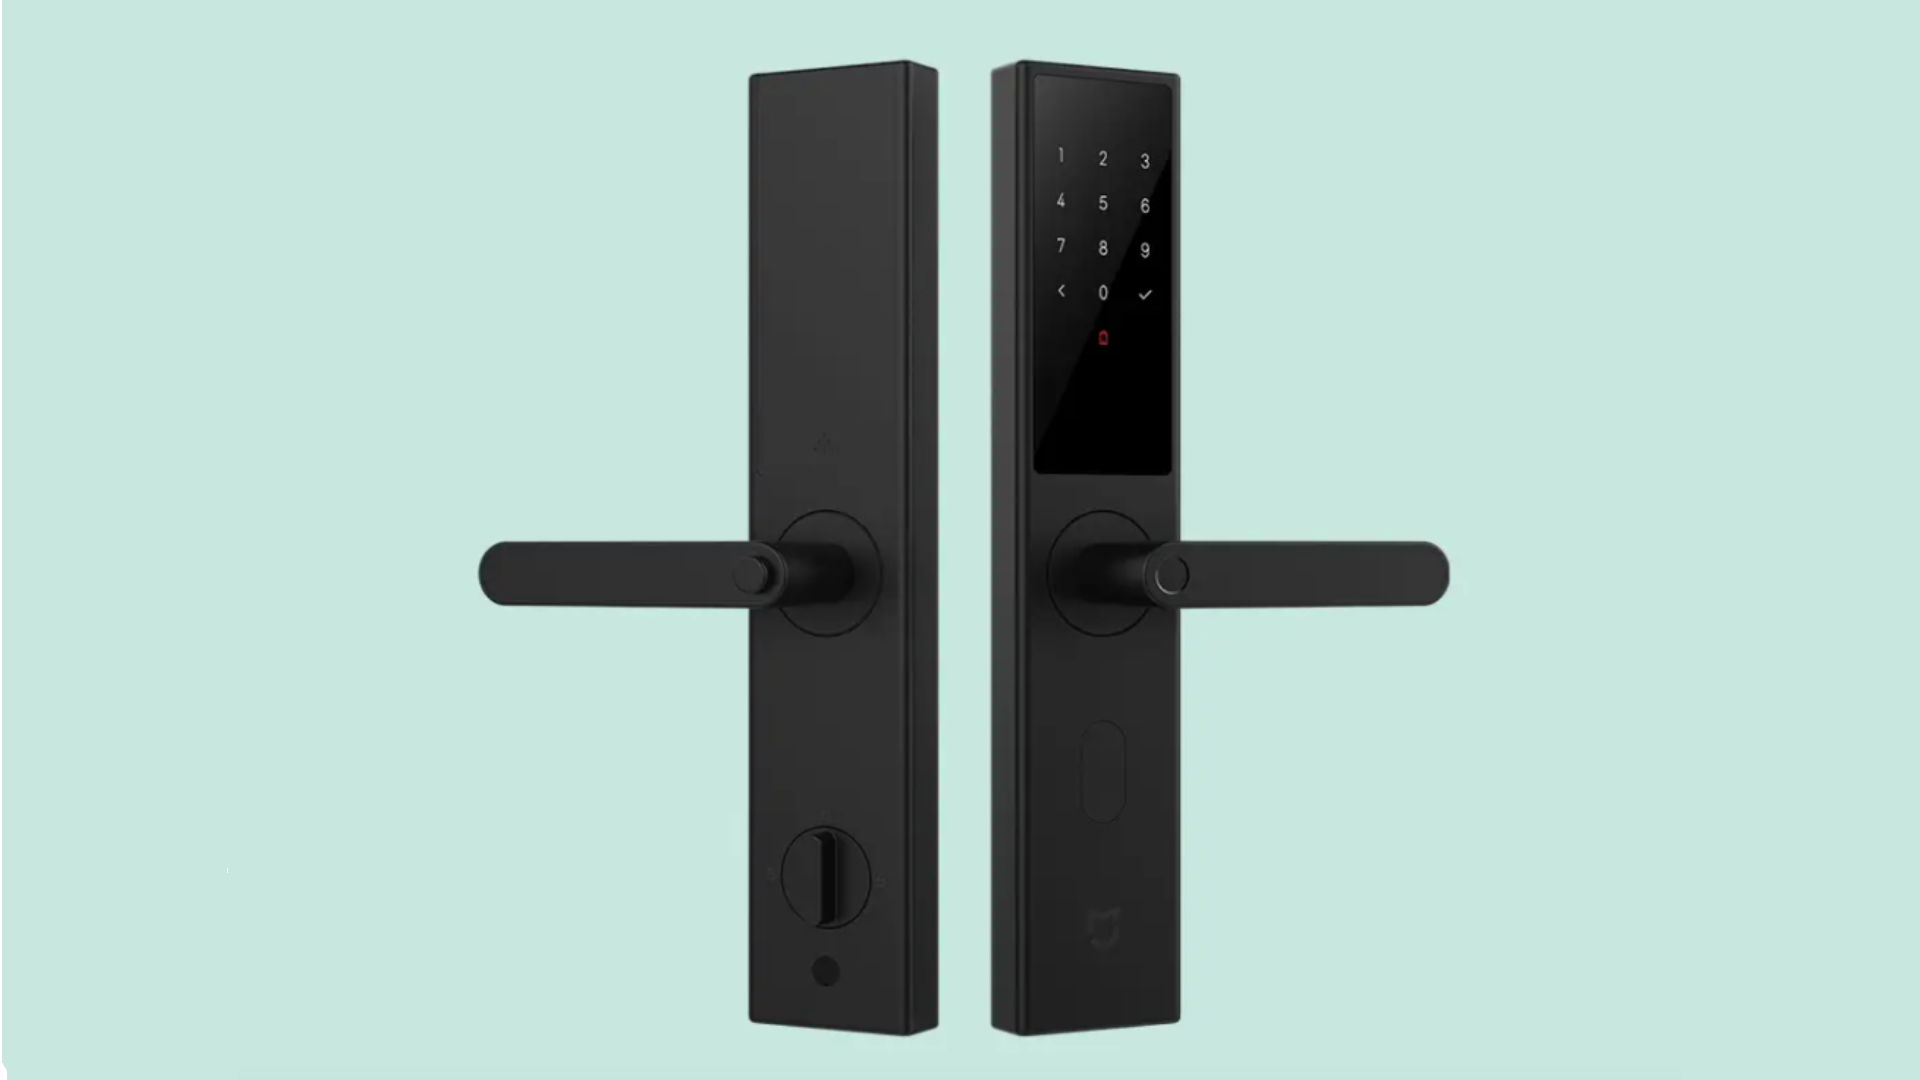 Xiaomi Mijia Smart Door Lock Push Pull